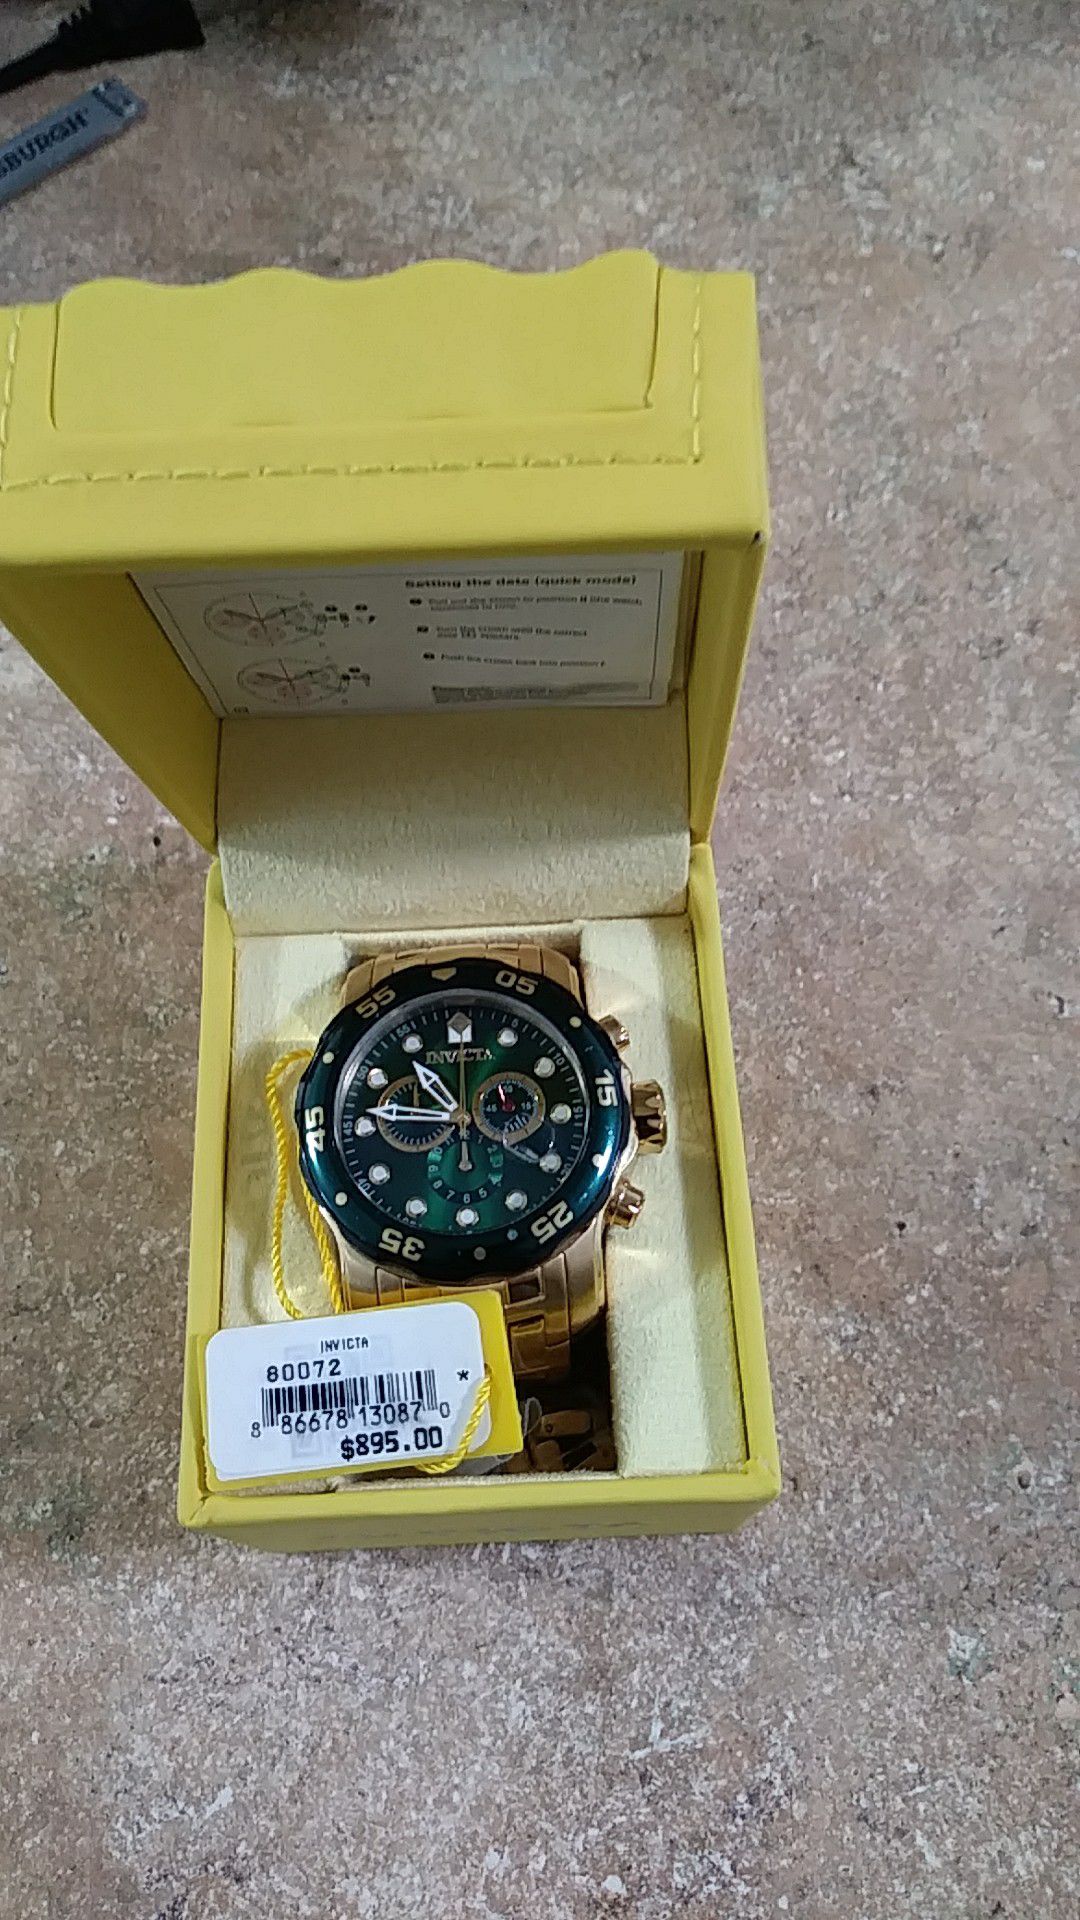 Invicta model 80072 green dial chronograph